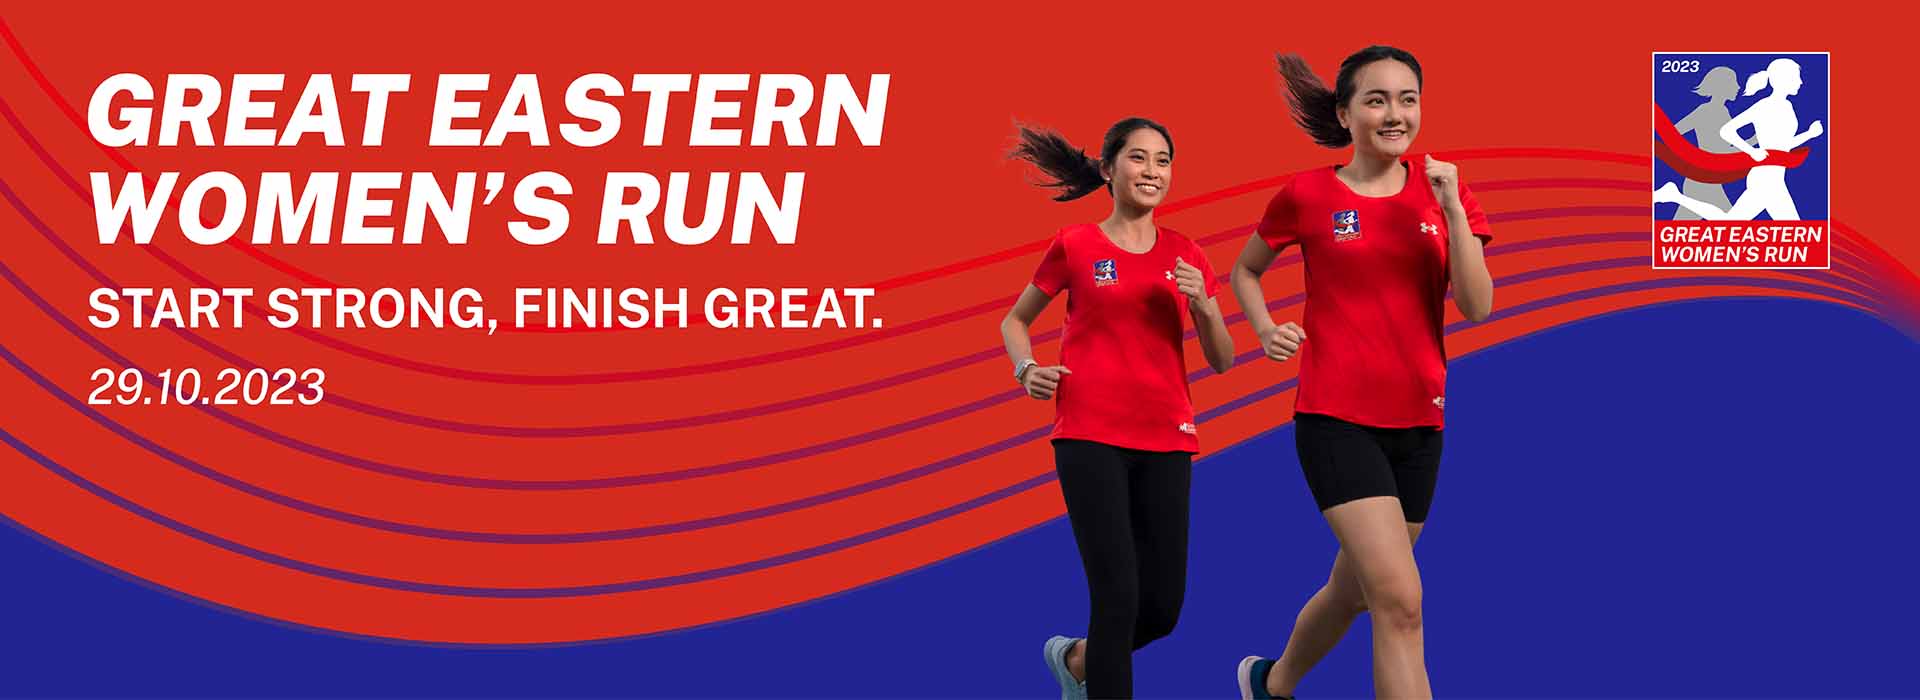 Great Eastern Women's Run 2023